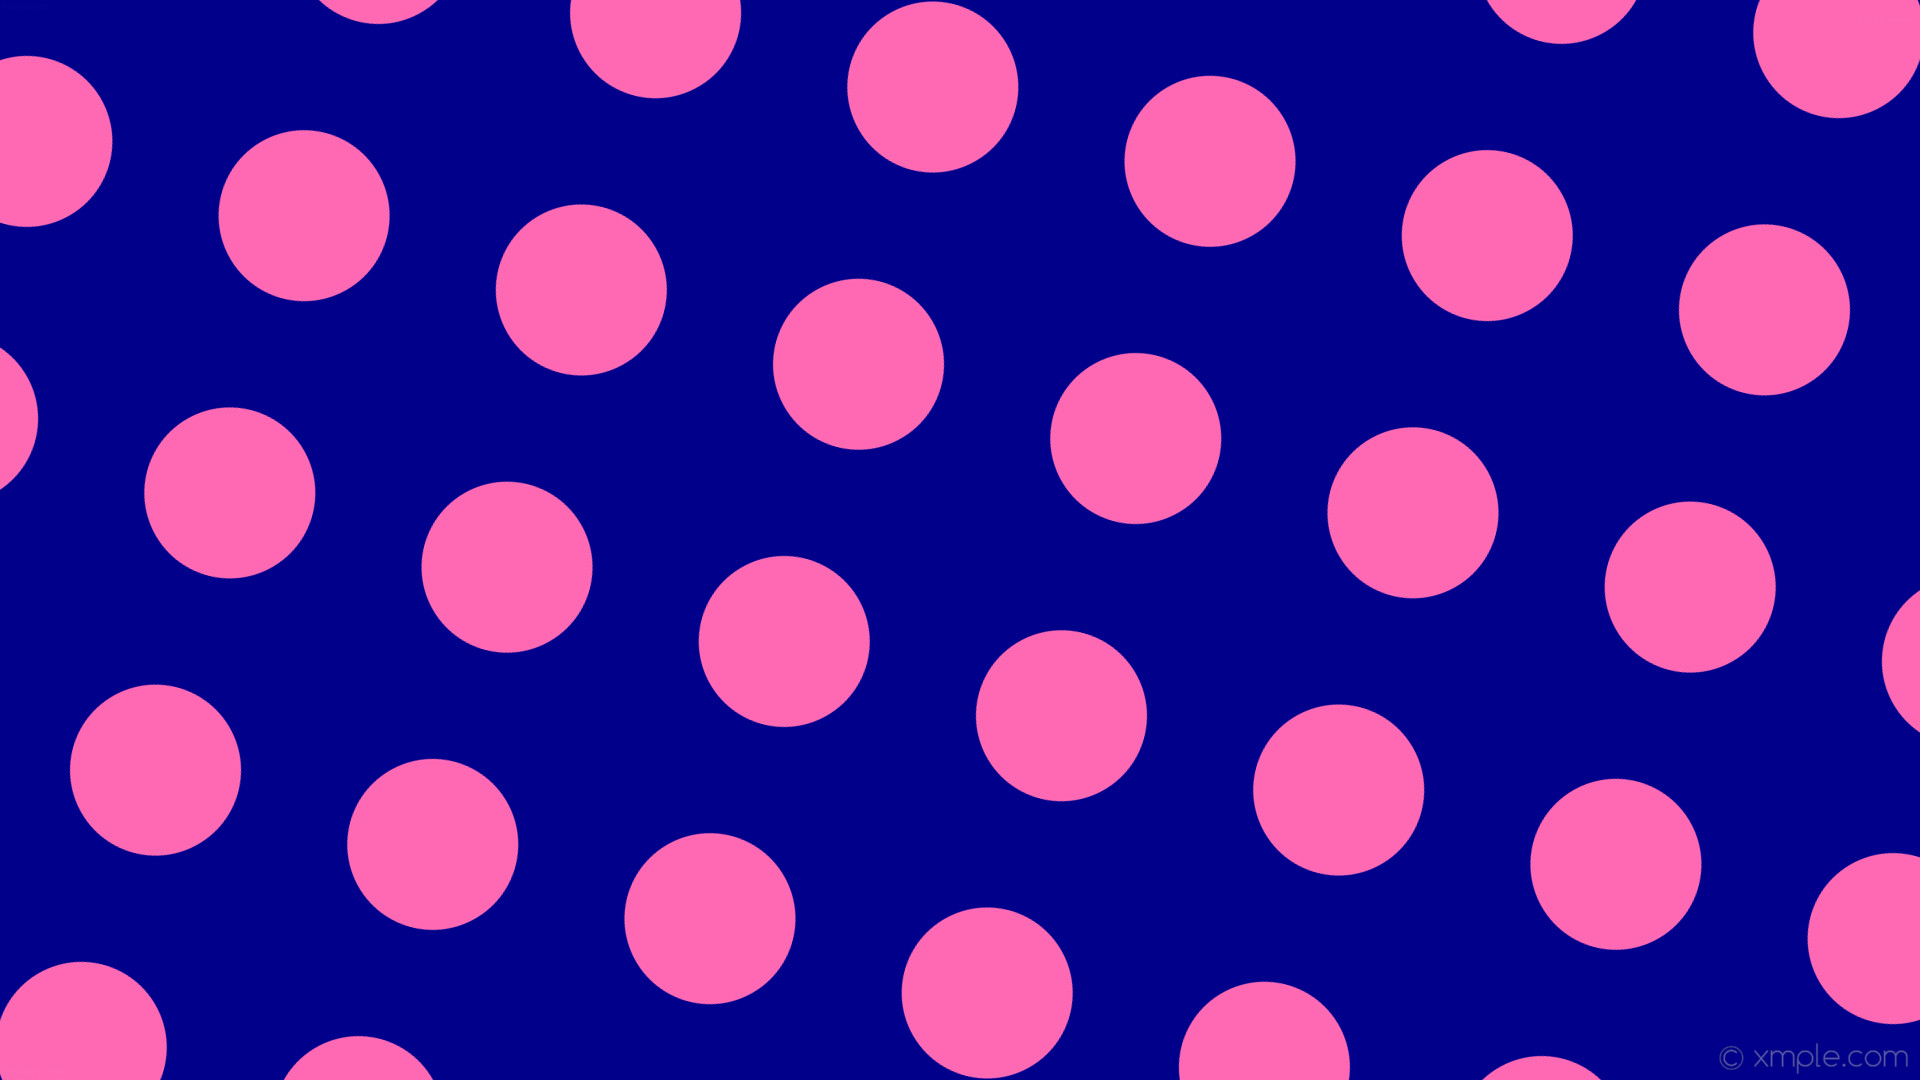 1920x1080 wallpaper spots blue pink polka dots dark blue hot pink #00008b #ff69b4 165Â°